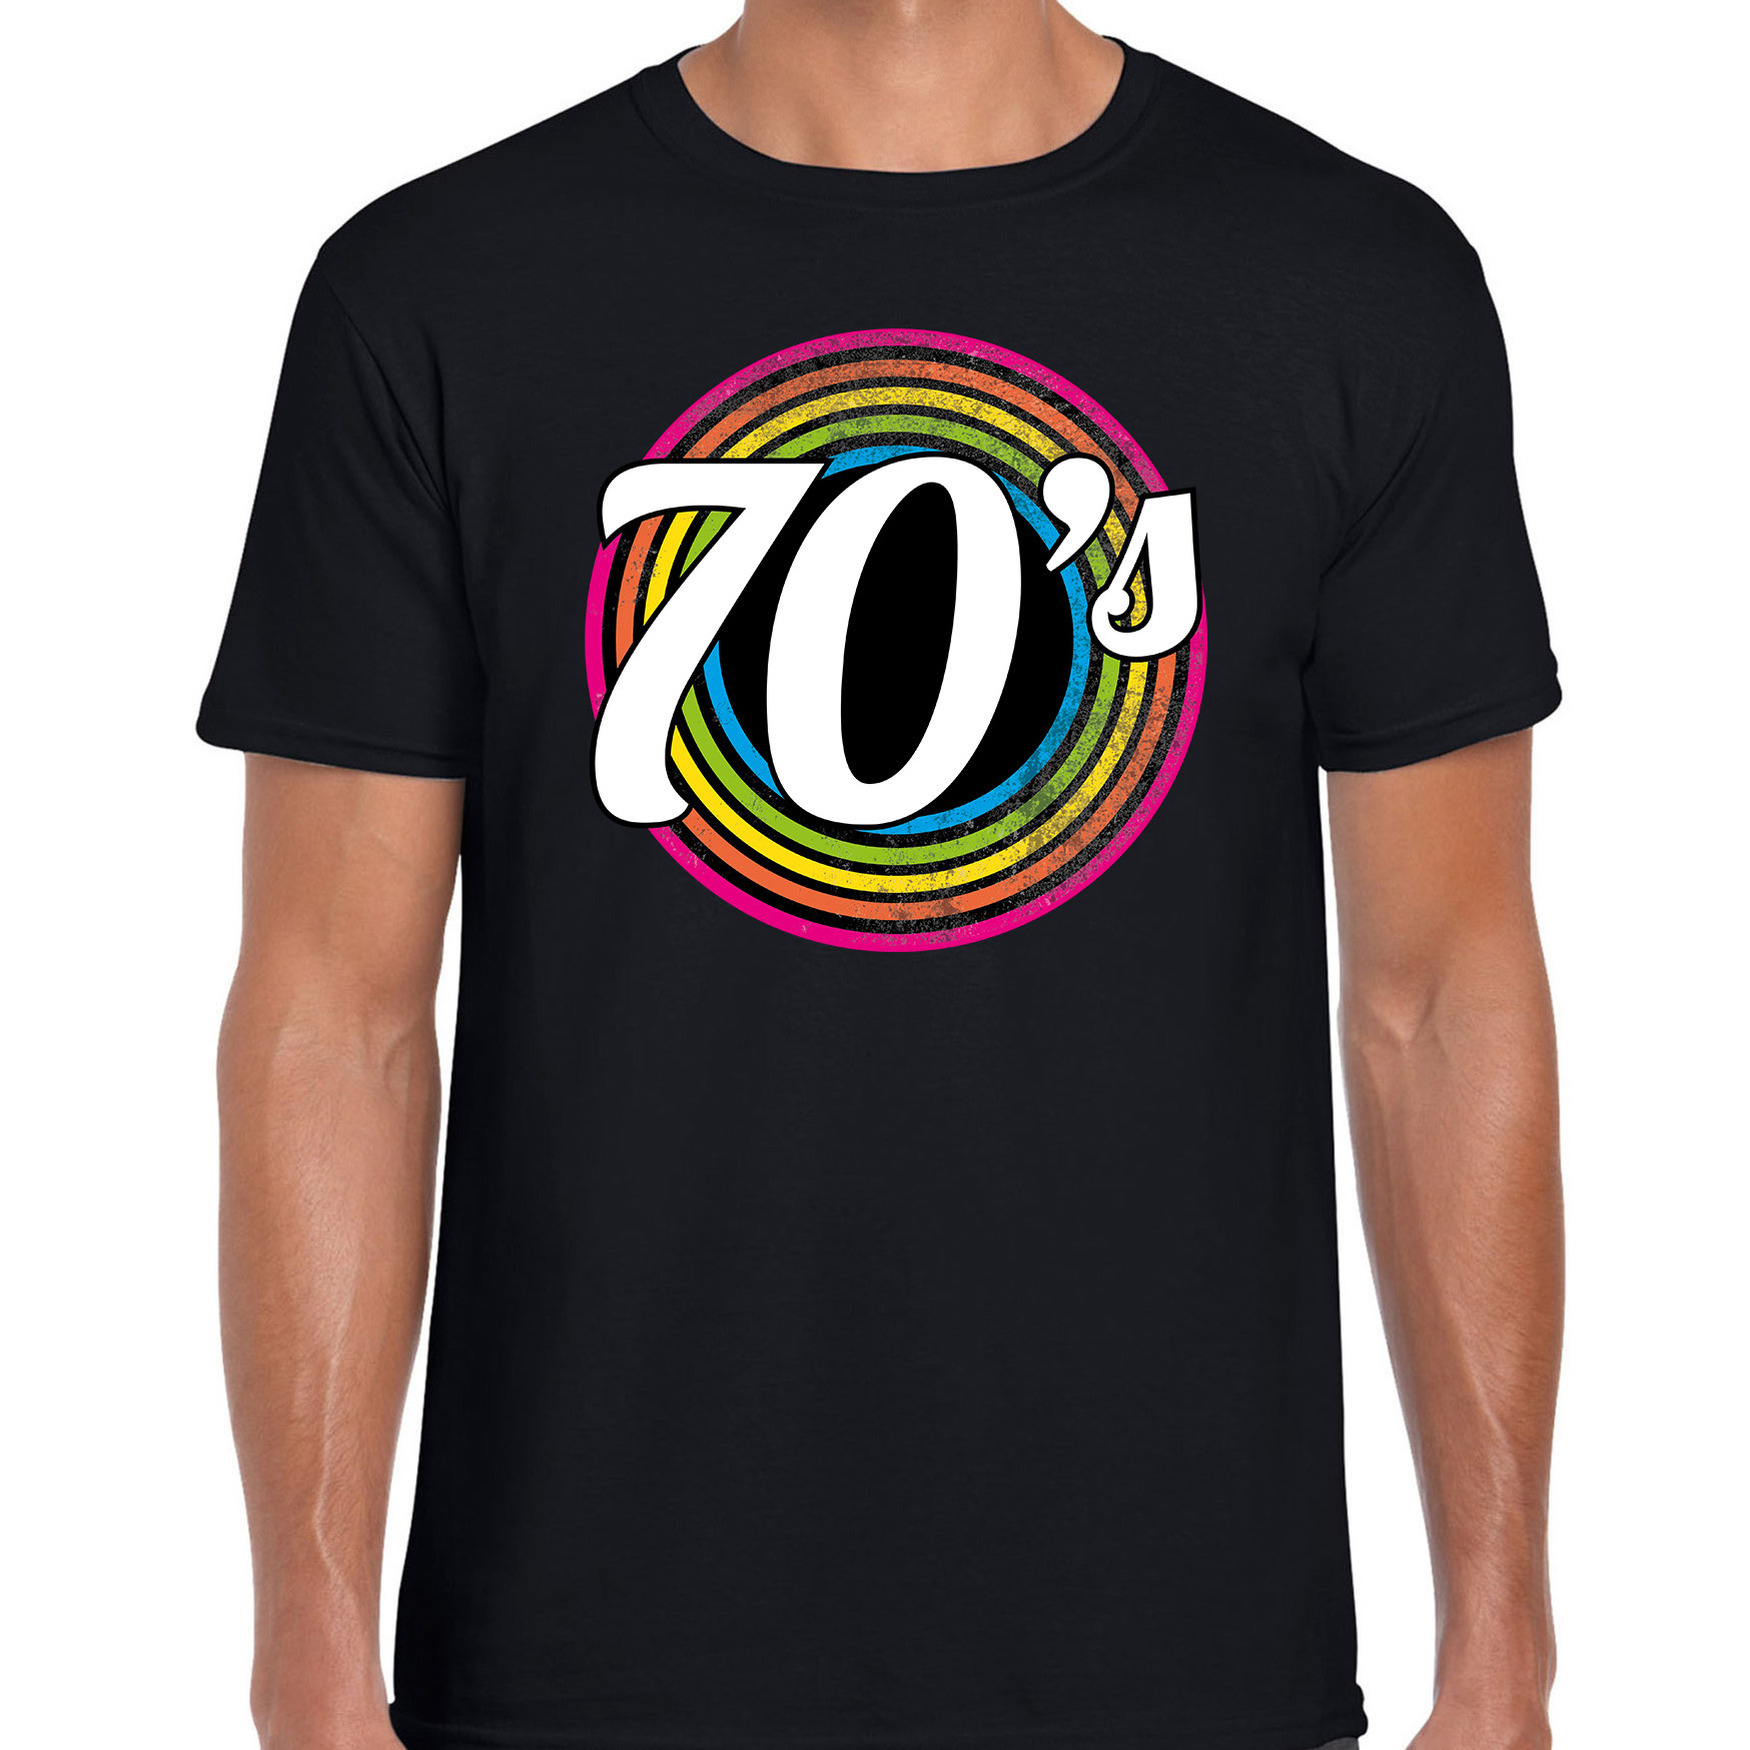 70s-seventies verkleed t-shirt zwart voor heren 70s, 80s party verkleed outfit